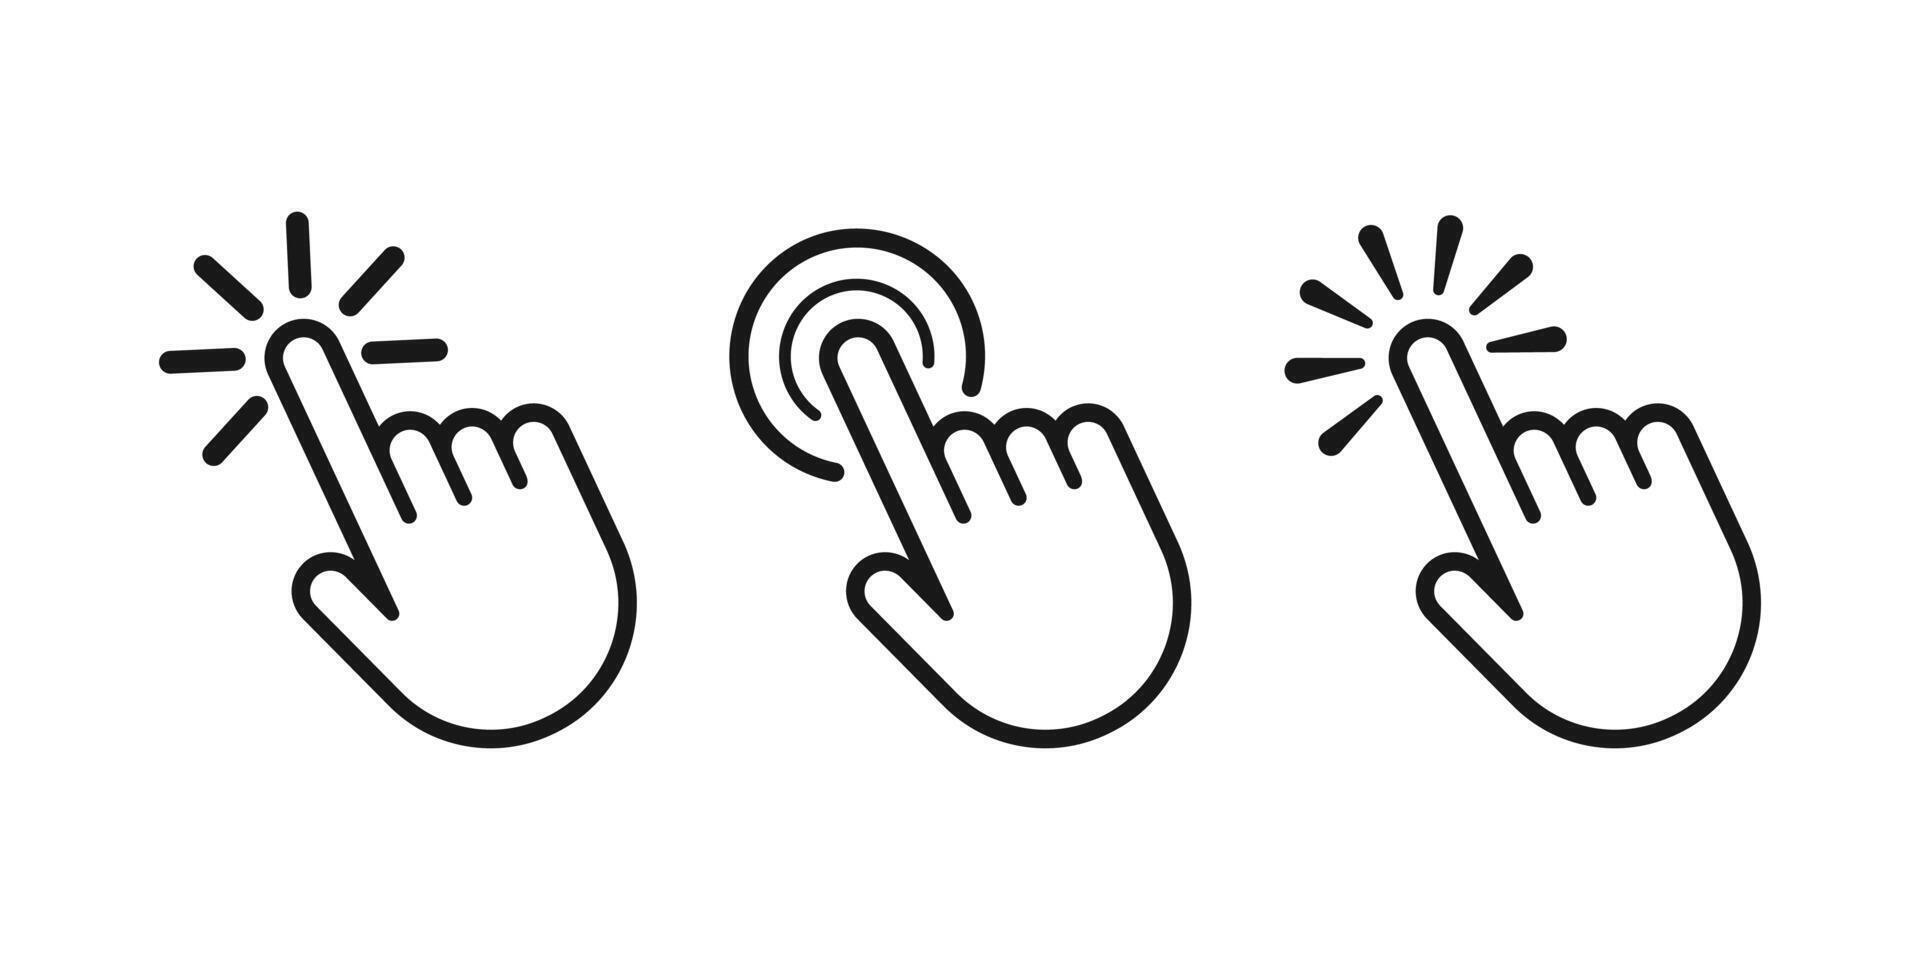 Zeiger Mauszeiger Symbol. Klicken Mauszeiger, zeigen Hand Klicks Symbole. klicken Mauszeiger vektor